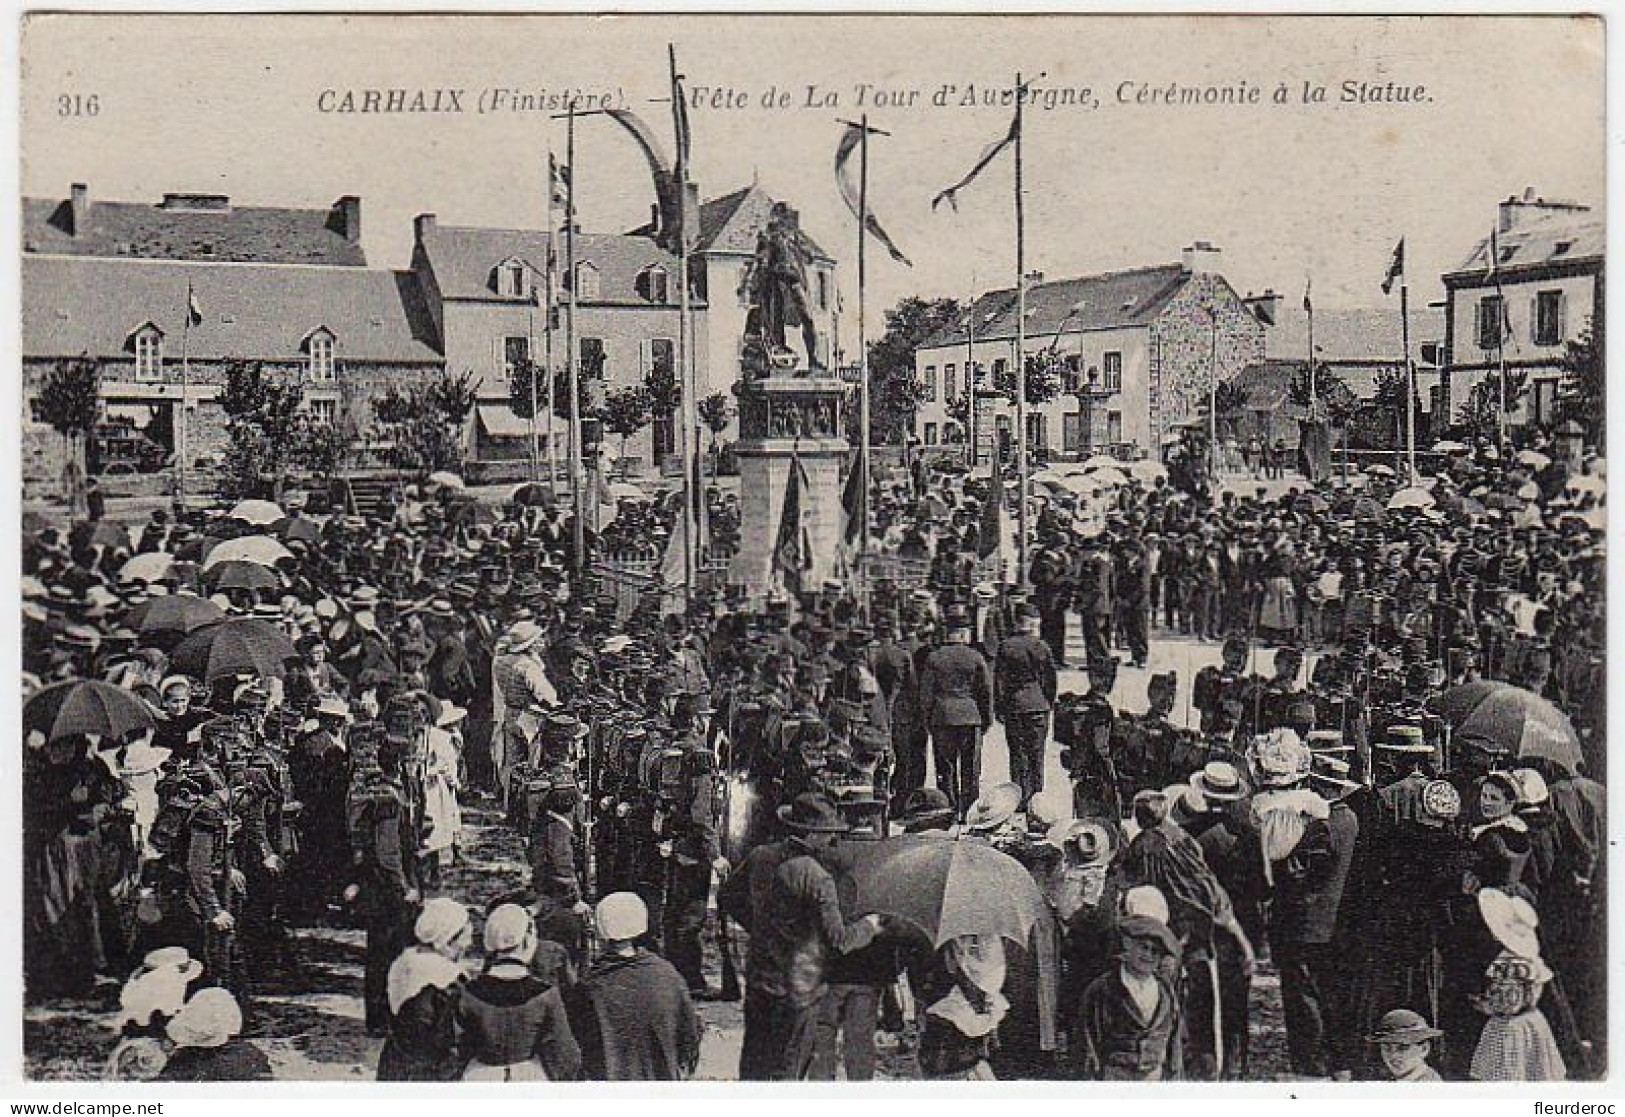 29 - B54419CPA - CARHAIX - Fete De La Tour D'auvergne, Cérémonie à La Statue - Parfait état - FINISTERE - Carhaix-Plouguer